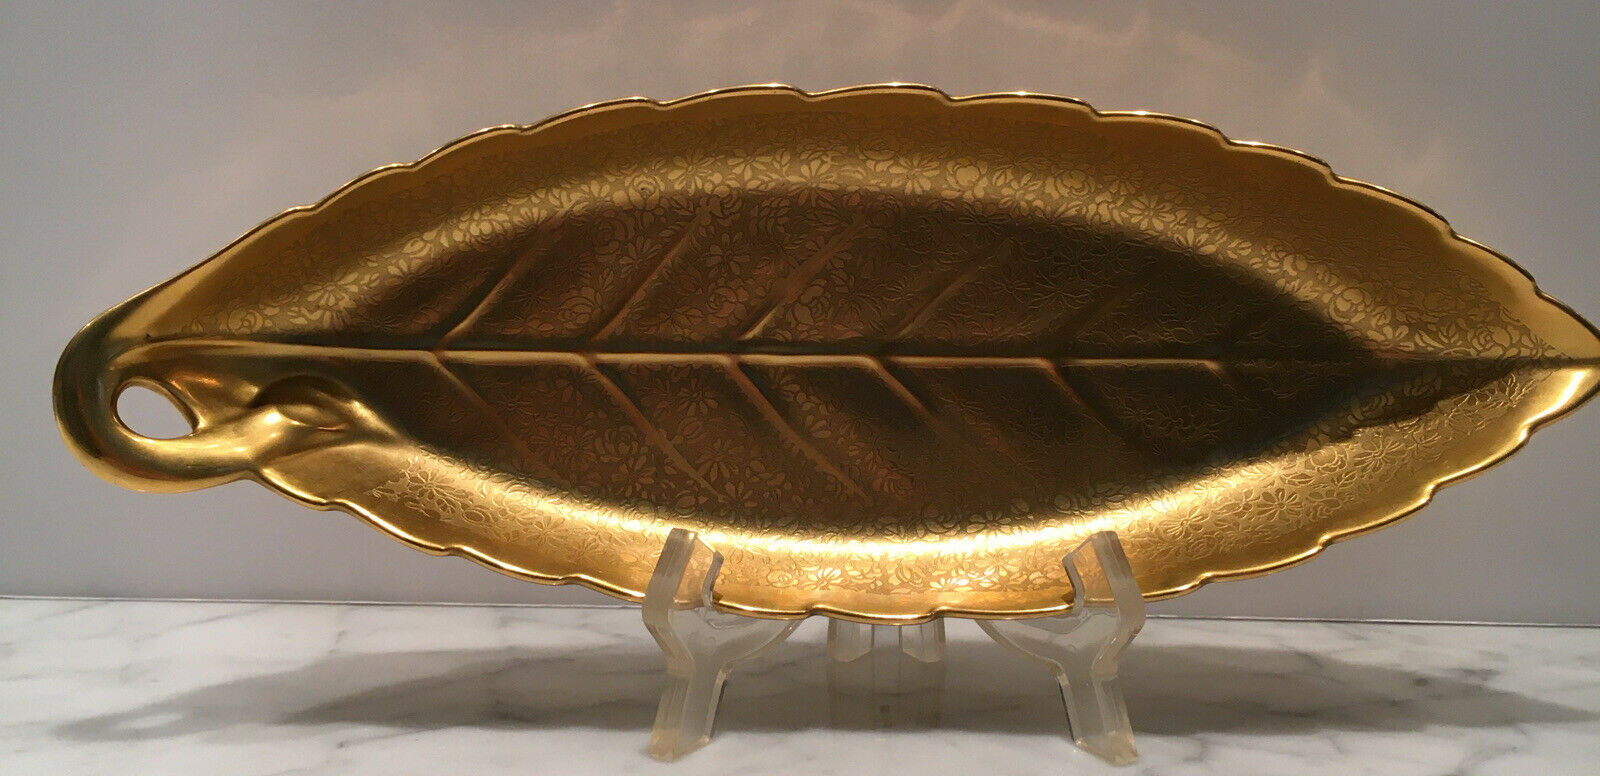 Pickard Porcelain 24kt Gold Encrusted Leaf Shaped Serving Tray Dish Platter #419